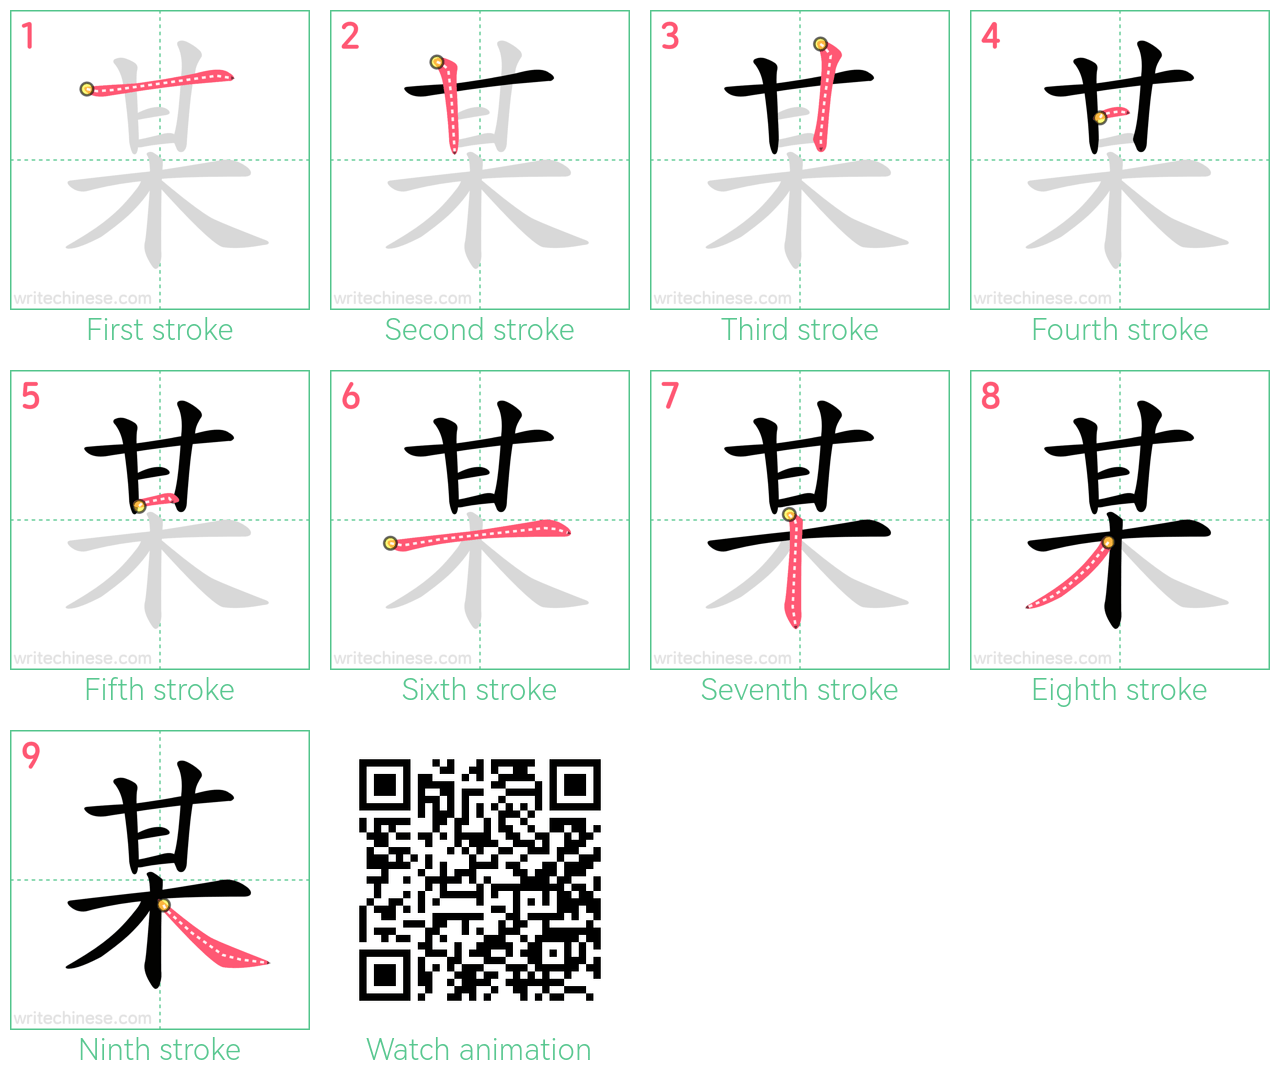 某 step-by-step stroke order diagrams